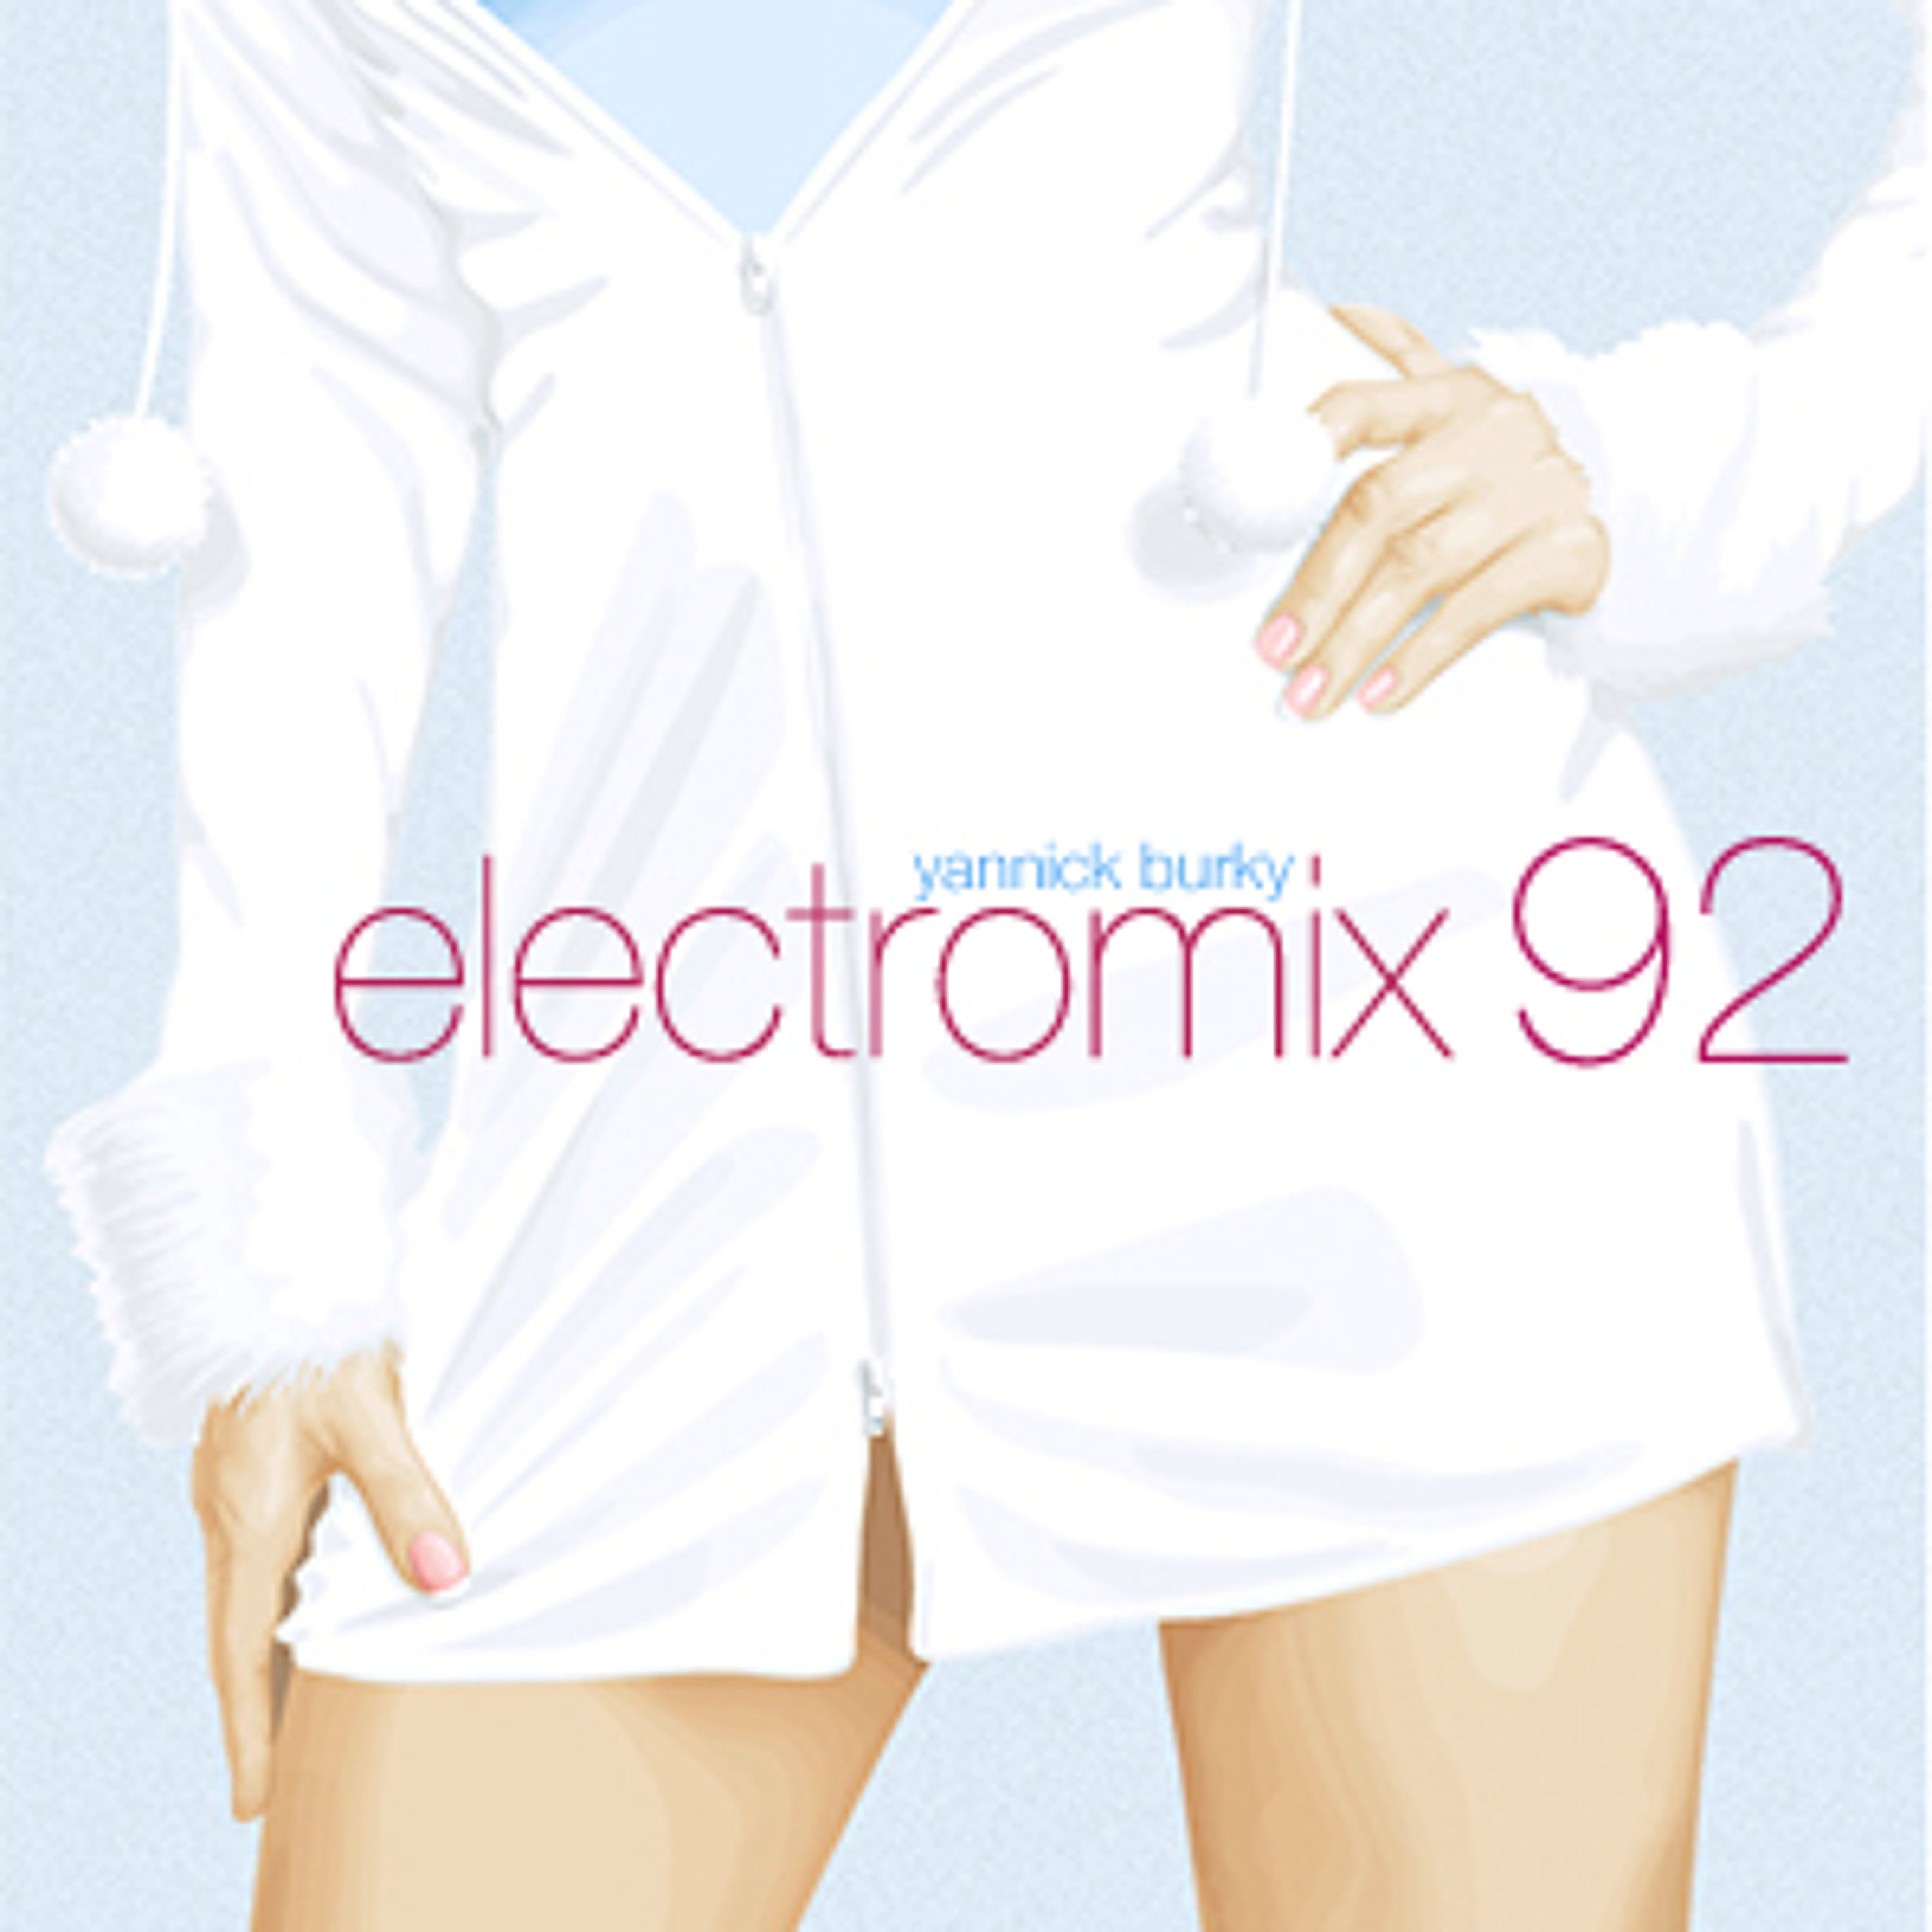 electromix 92 • EDM